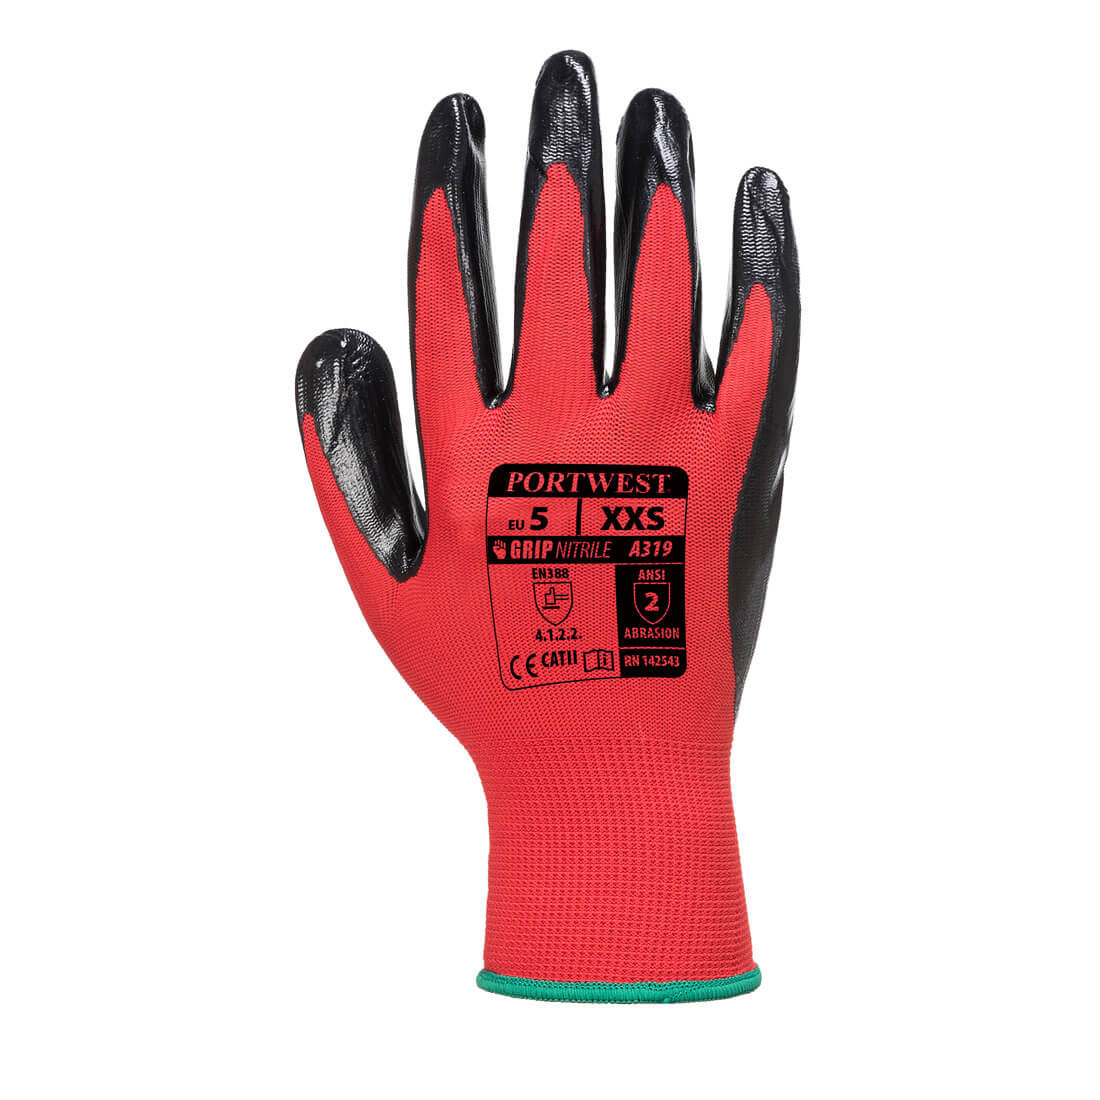 Flexo Grip : Nylon enduit Nitrile(emballage blister) - Les équipements de protection individuelle